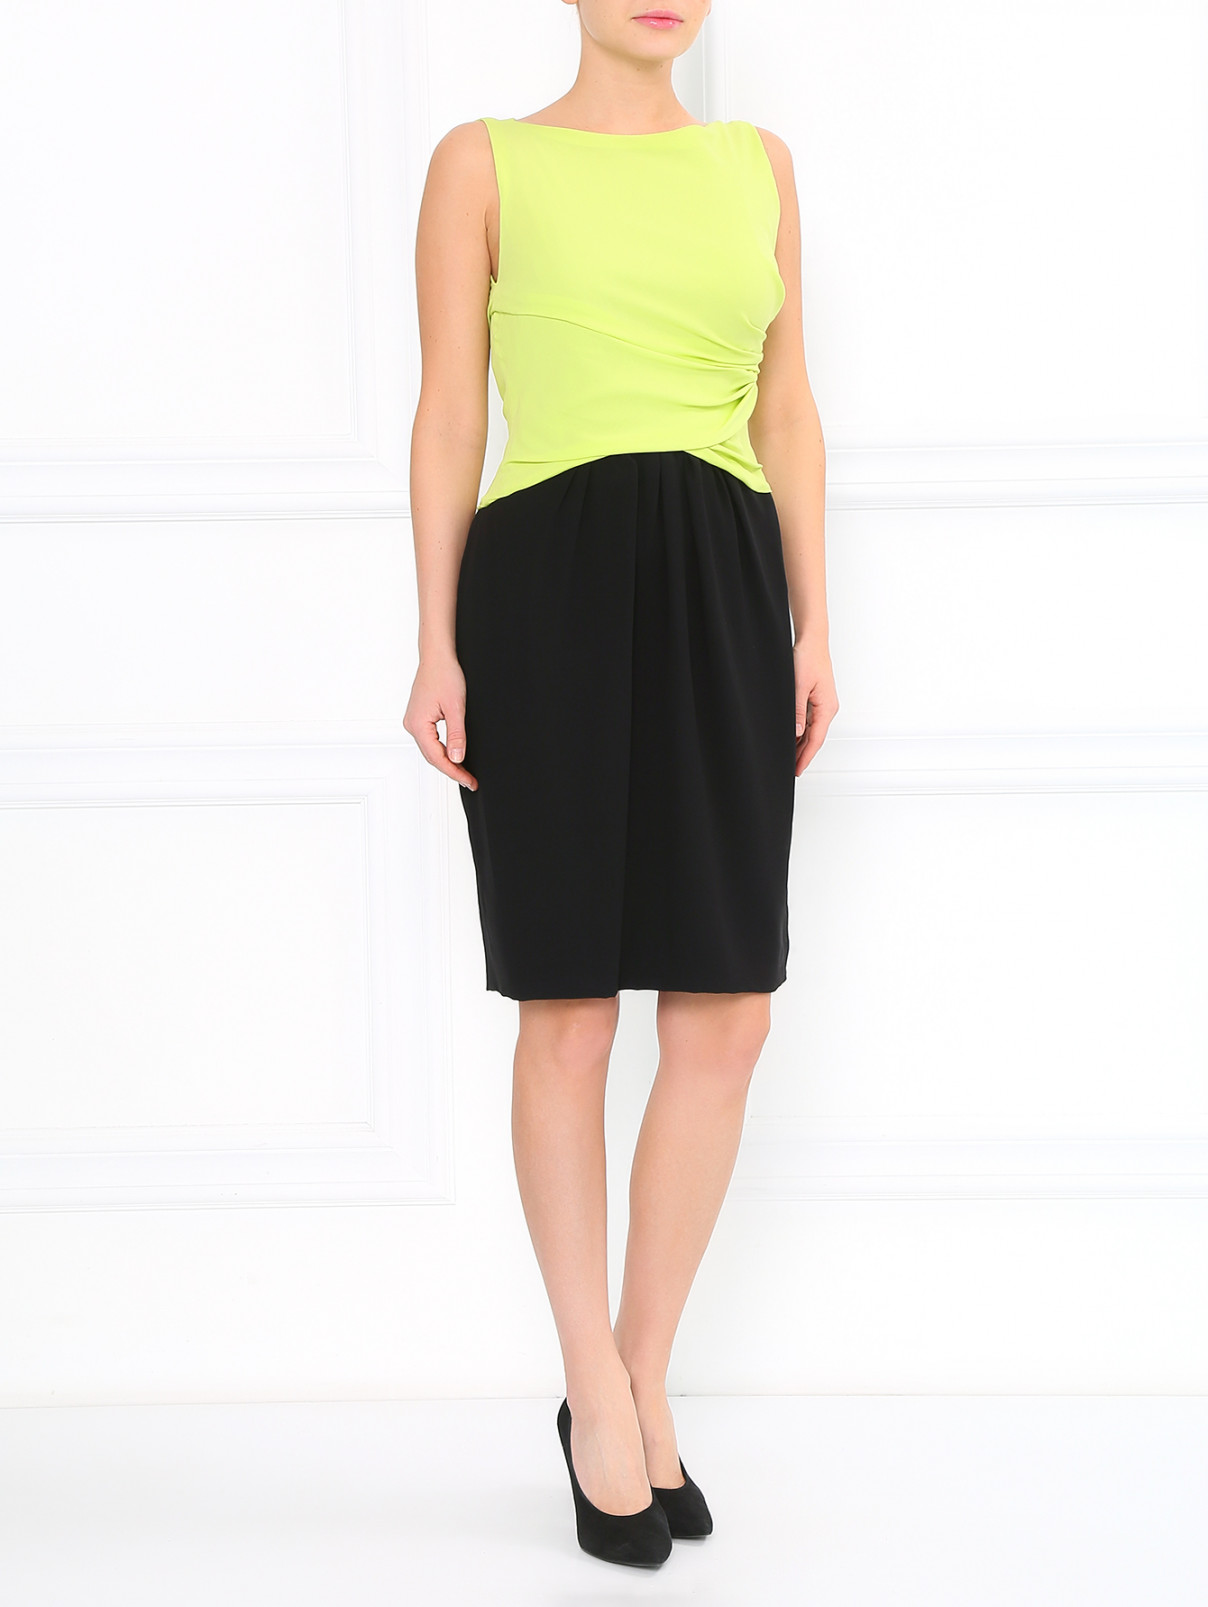 Шелковое платье без рукавов Moschino  –  Модель Общий вид  – Цвет:  Зеленый